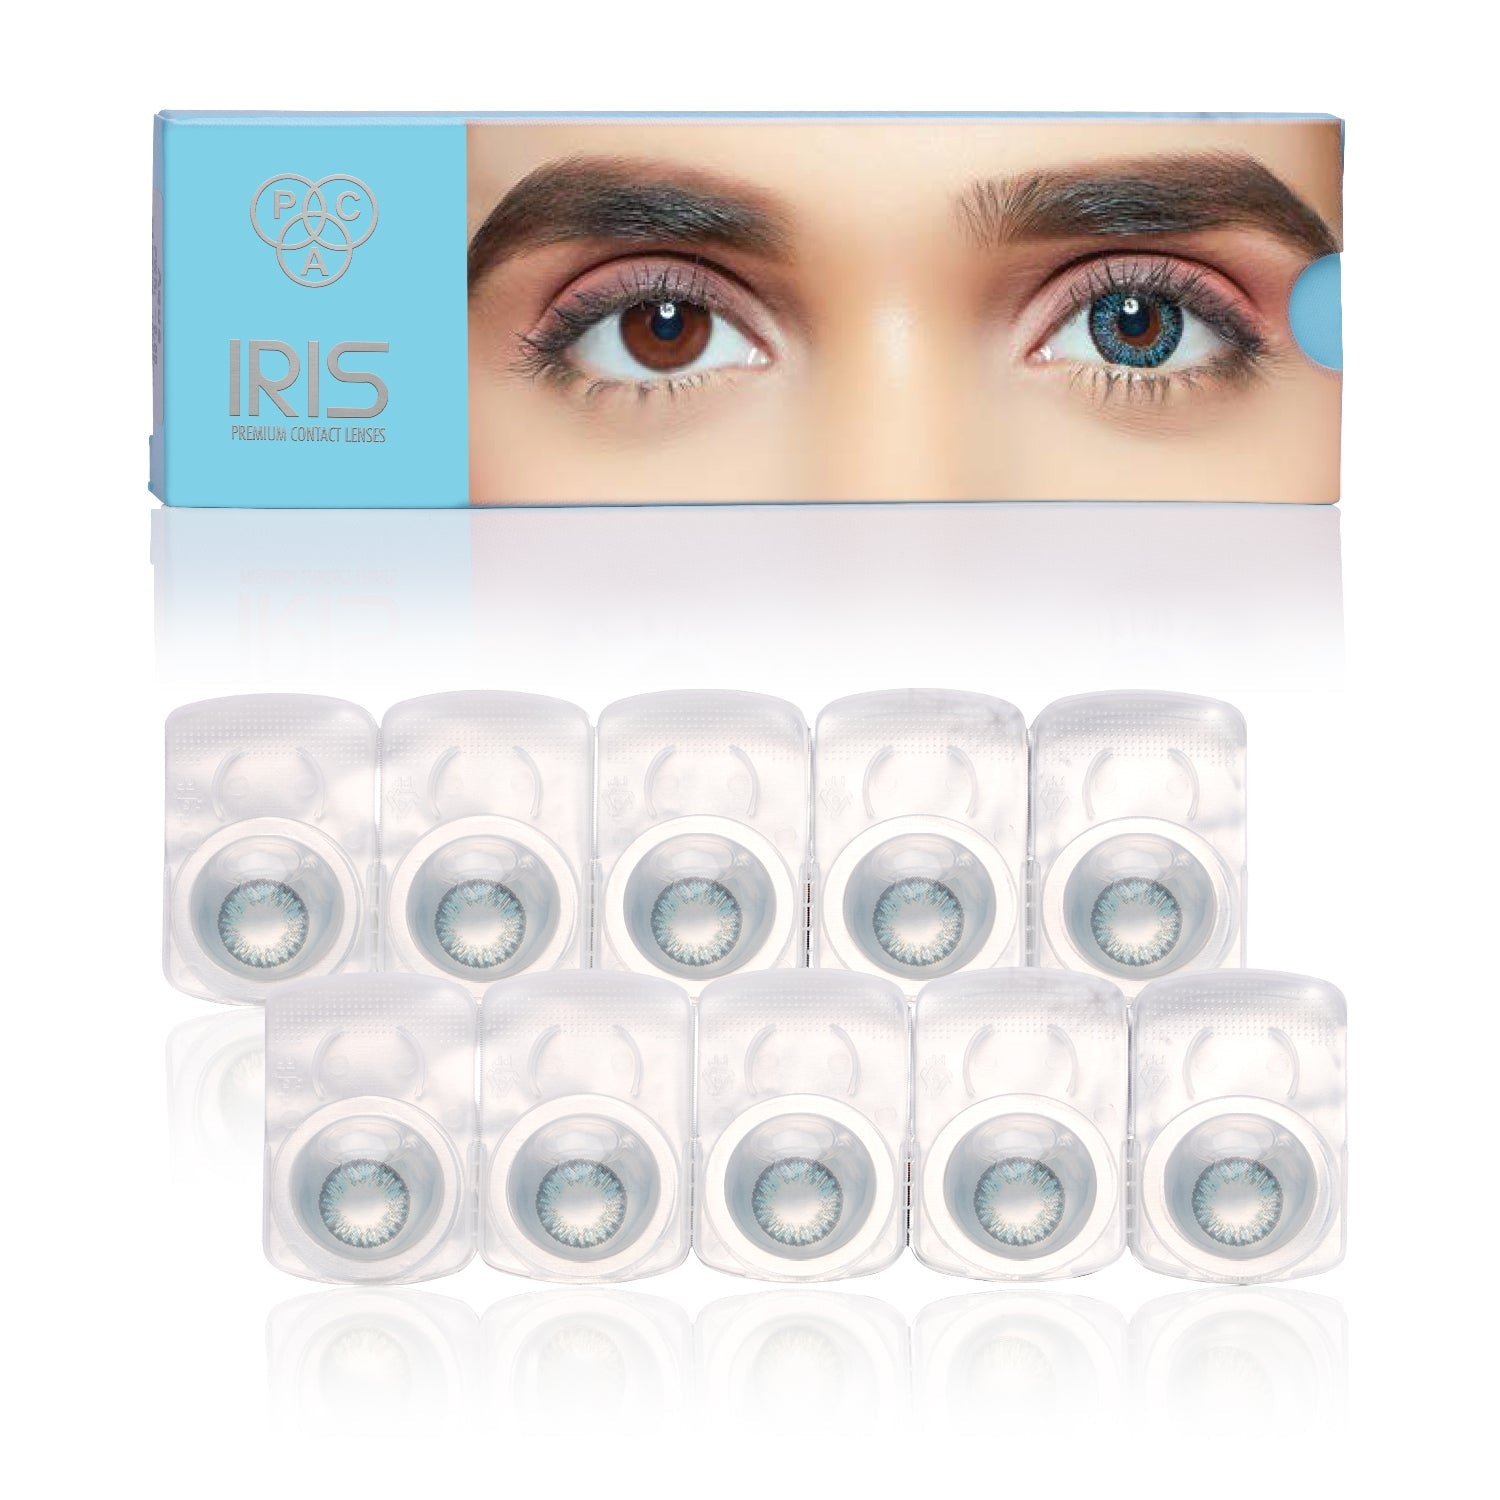 PAC Cosmetics IRIS Premium Contact Lenses (5 Pairs) #Color_Aqua